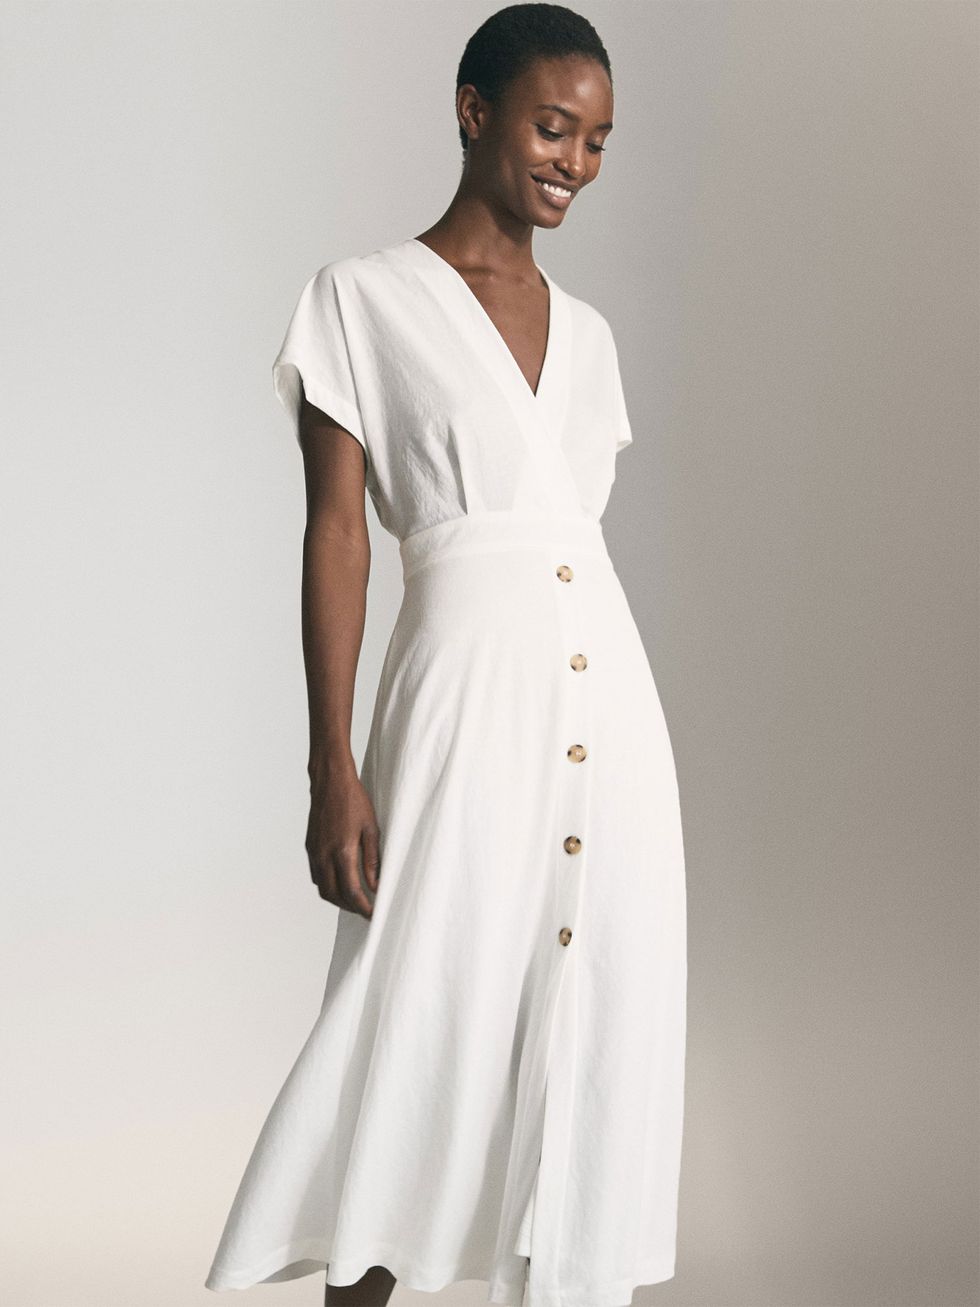 Perímetro Adaptado Ceder Hay un vestido largo blanco abotonado nuevo en Massimo Dutti